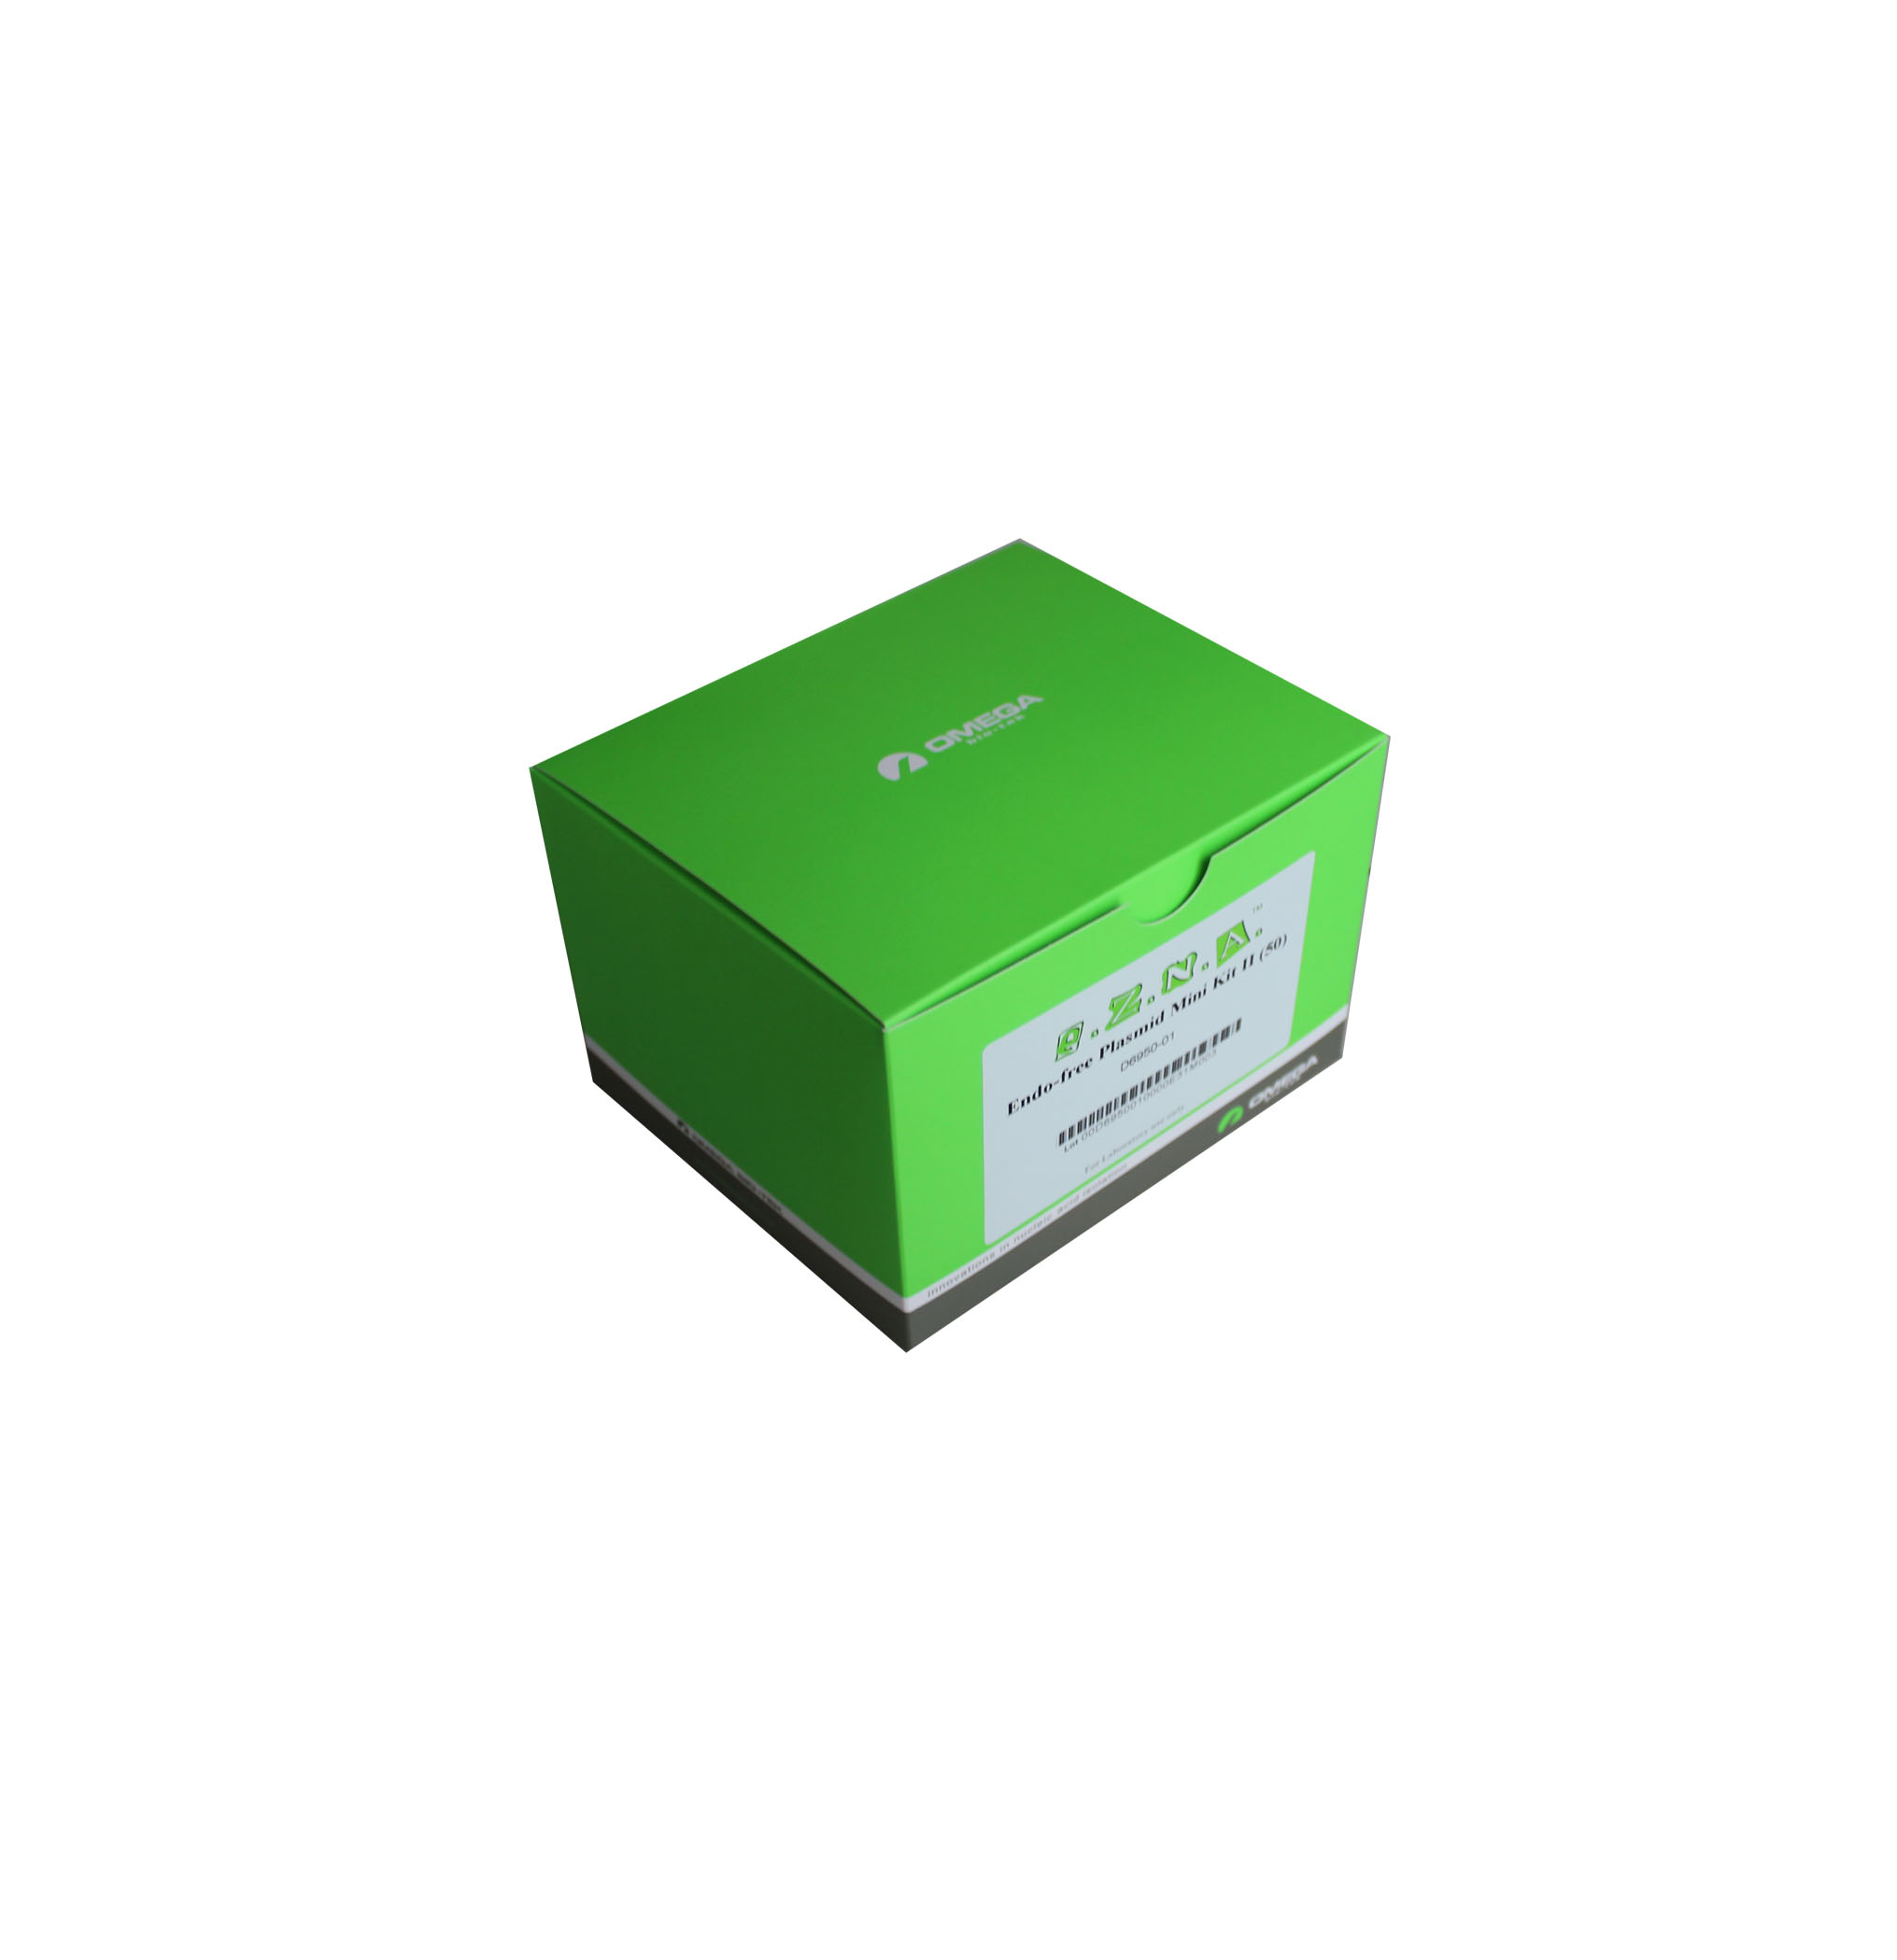 病毒RNA提取试剂盒 R6874-01